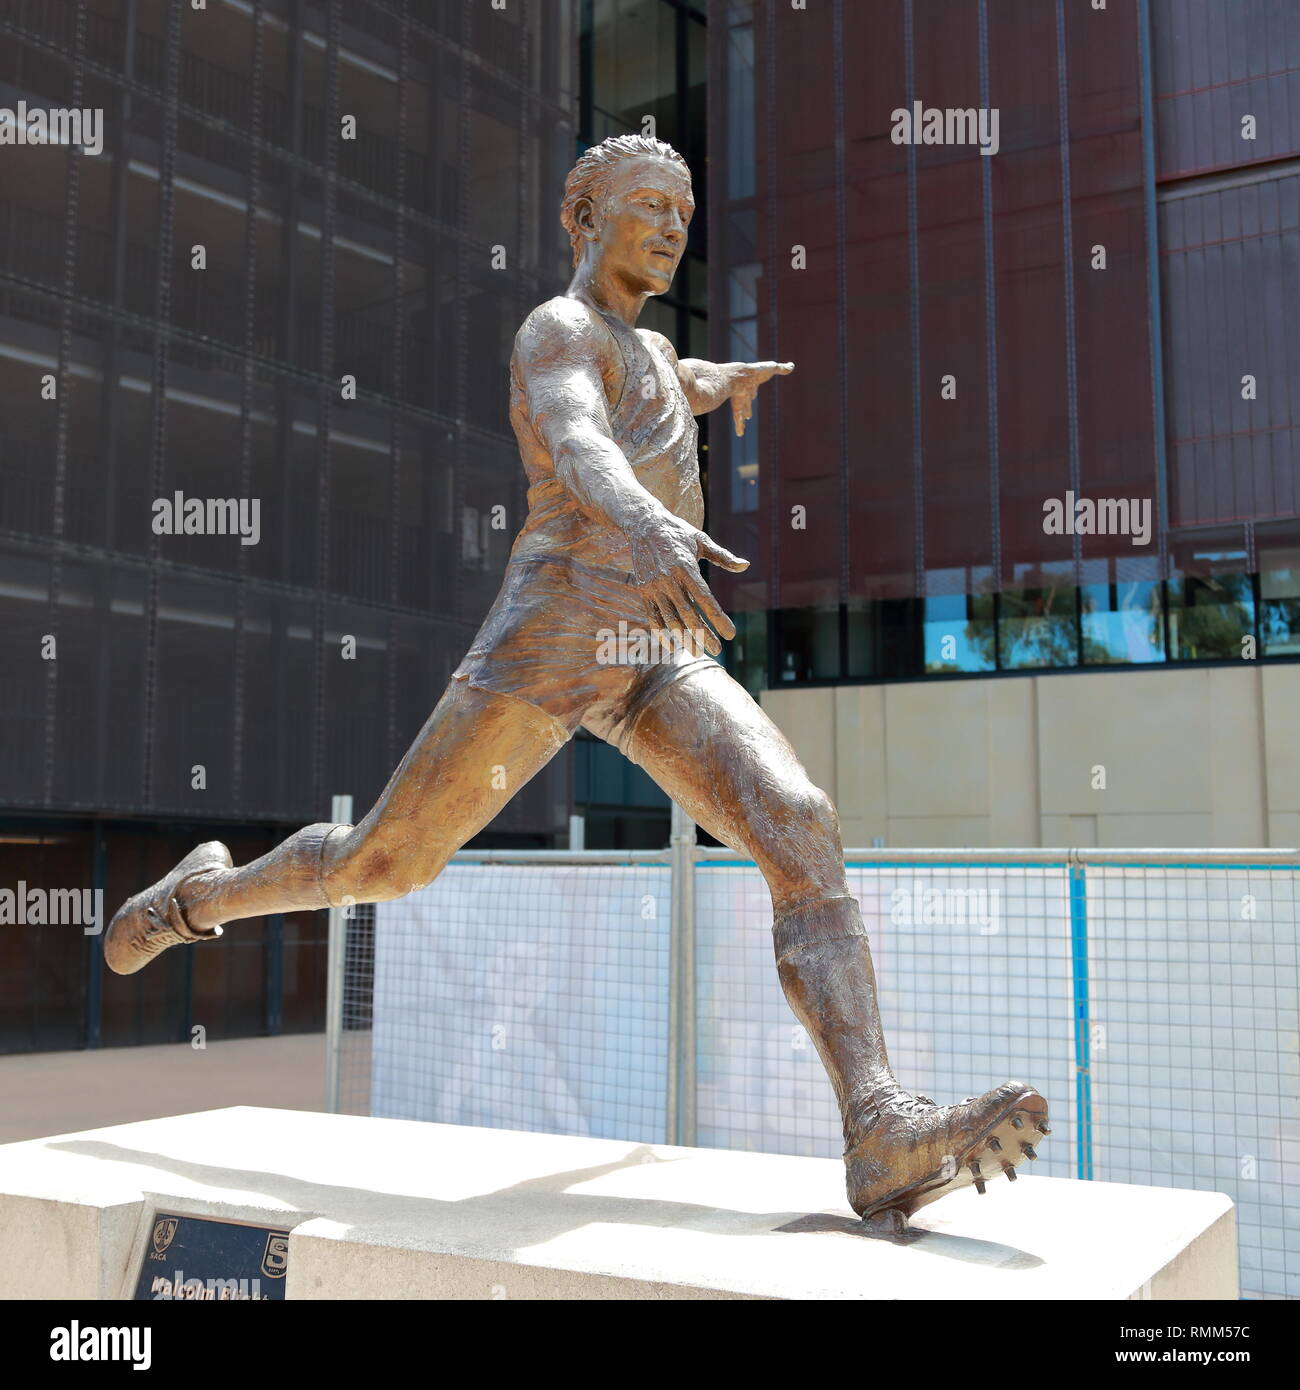 Statua di Australian Football player Malcolm batterico in parte anteriore del Adelaide Oval, Sud Australia Foto Stock